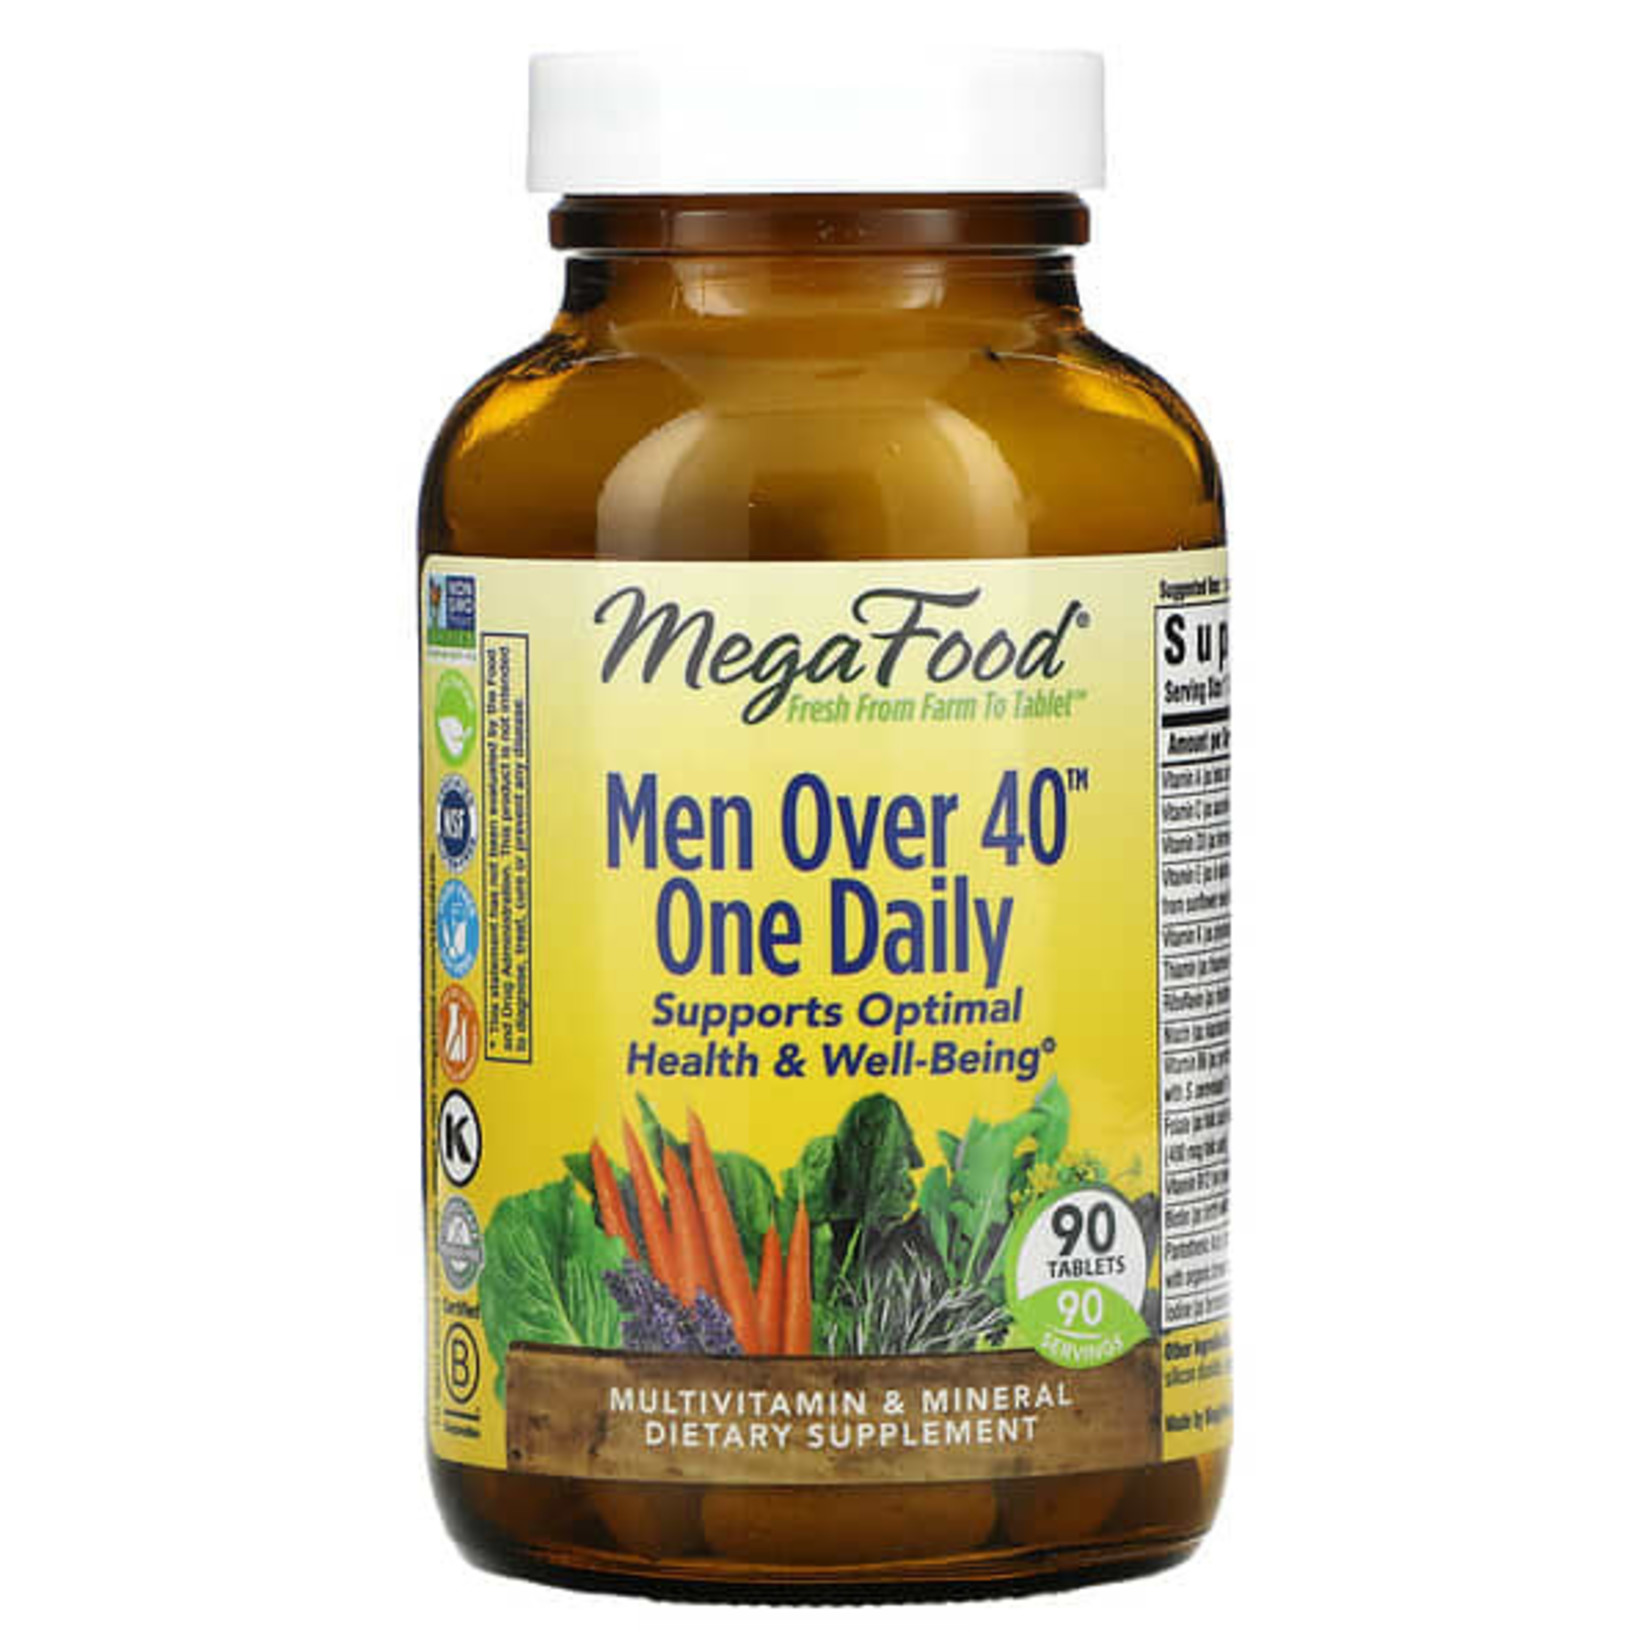 Megafood Megafood - Men Over 40 One Daily - 90 Tablets